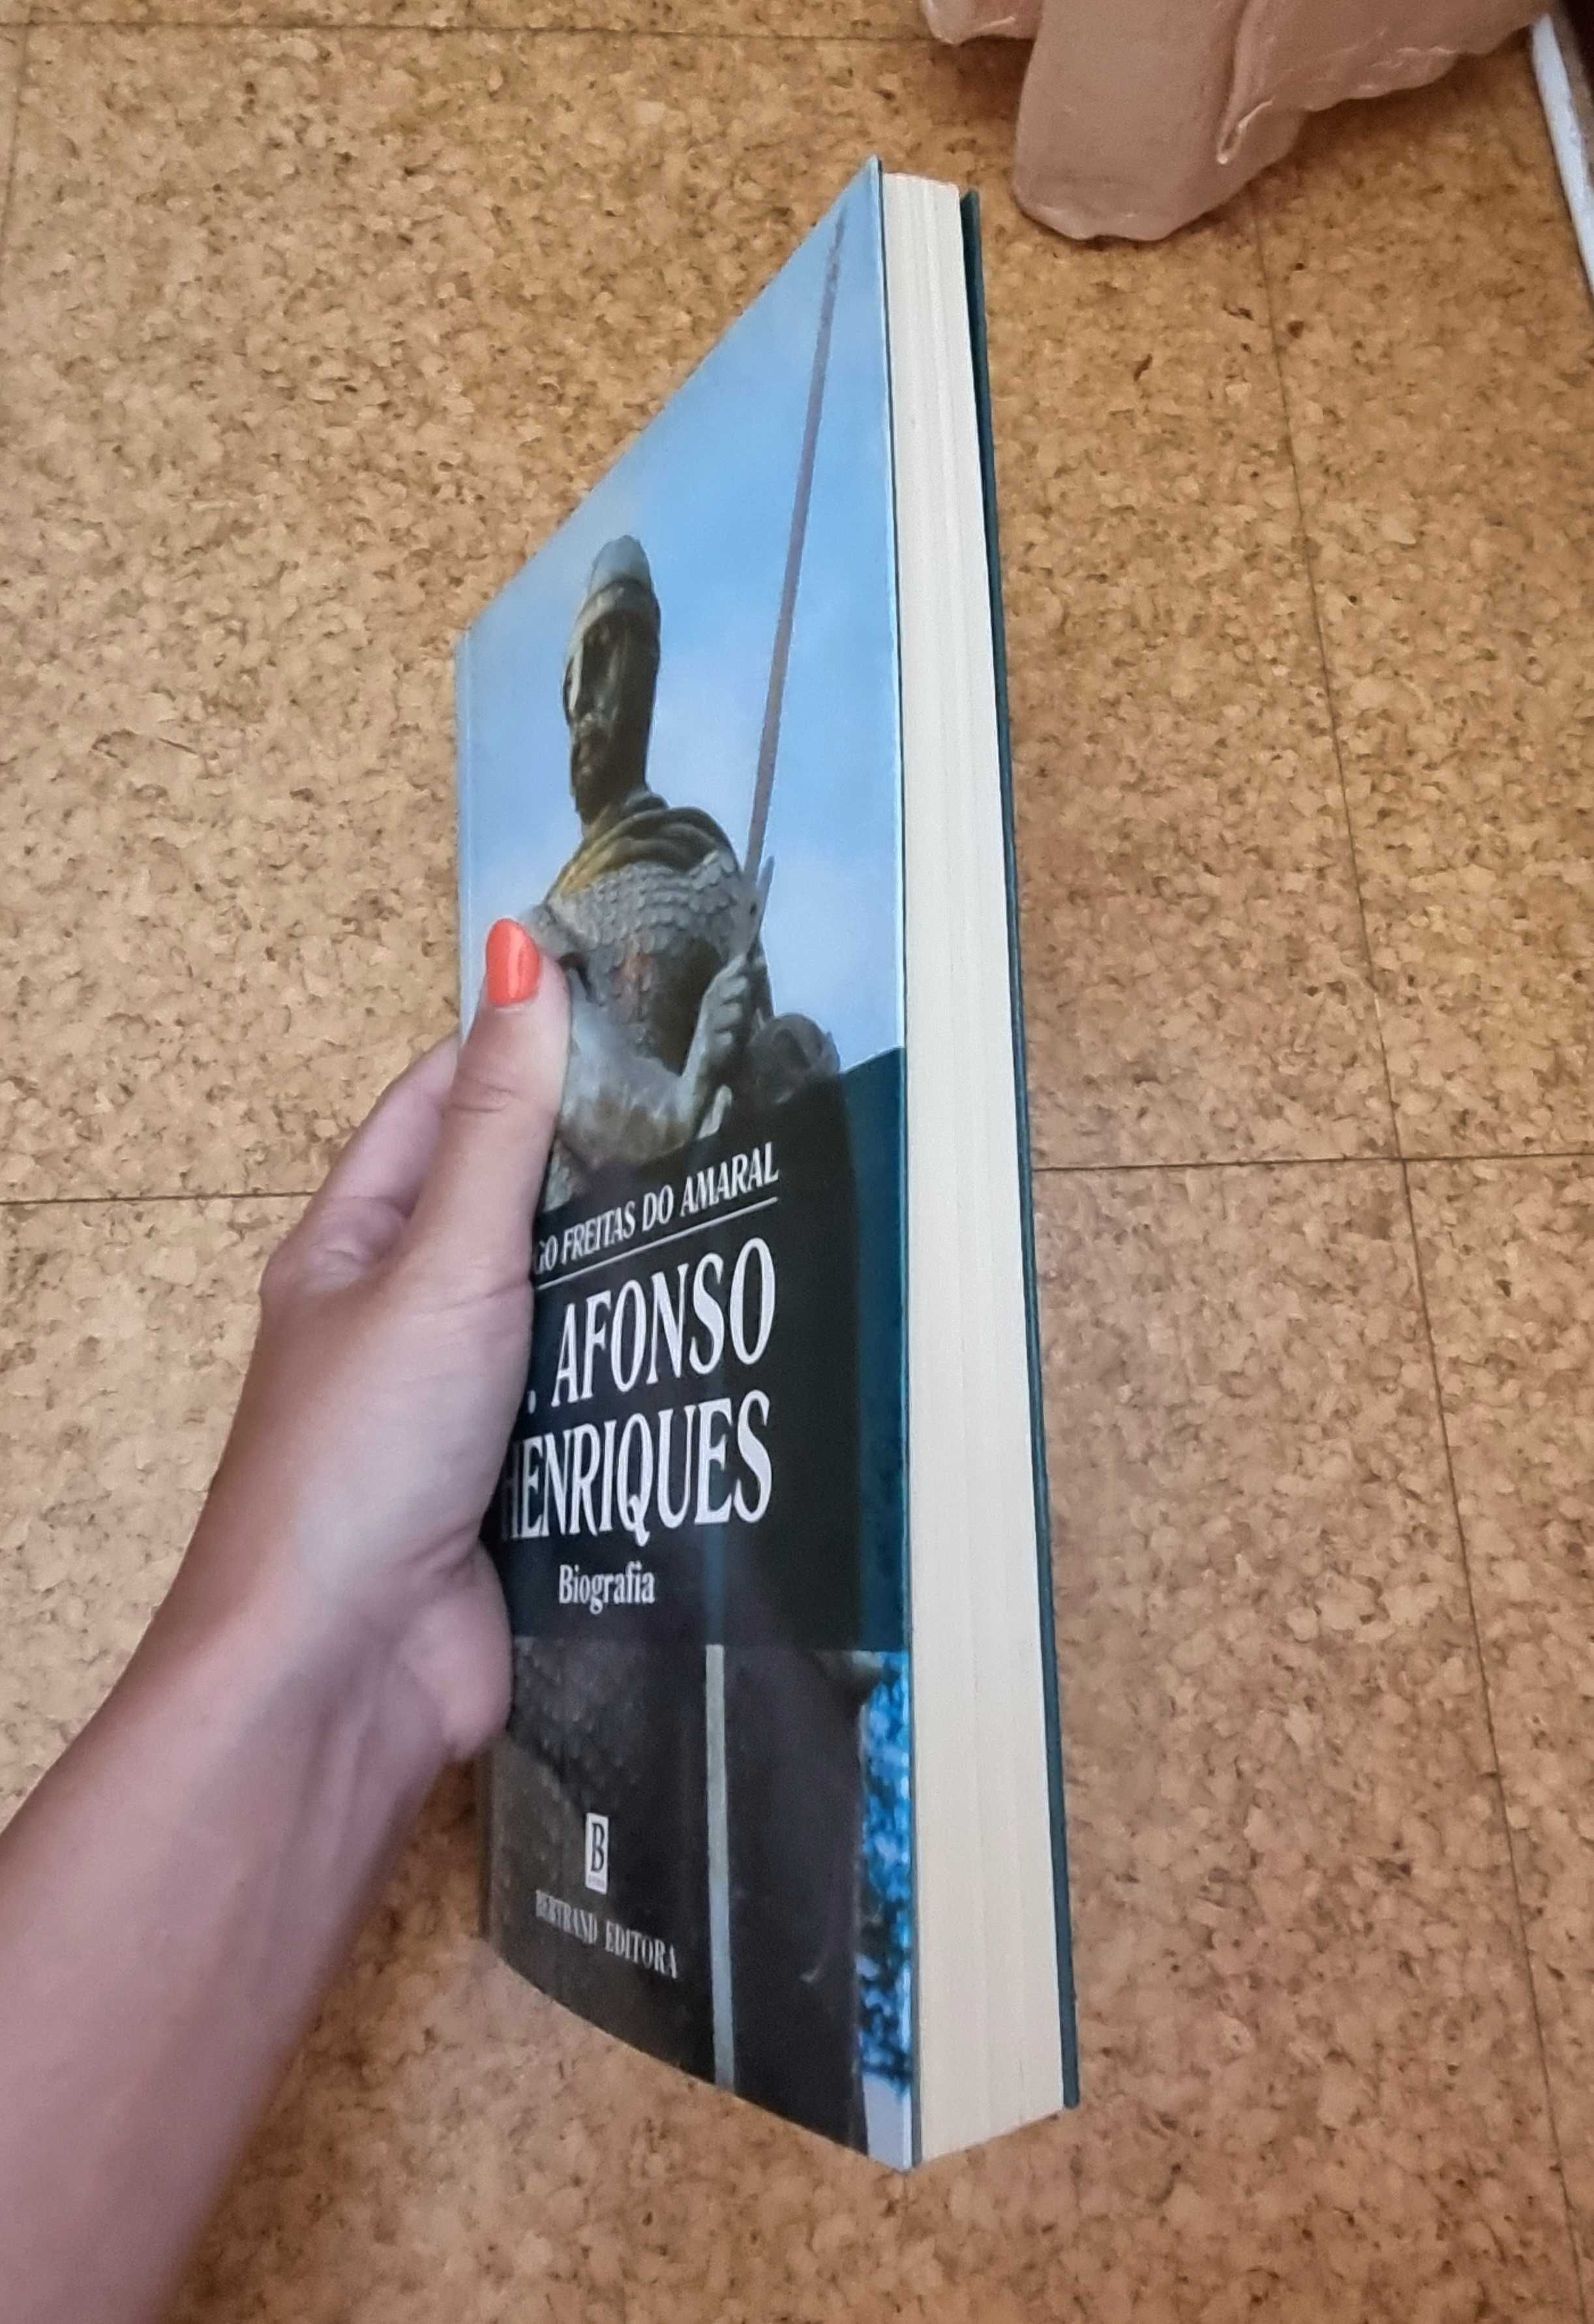 Livro "D. Afonso Henriques Biografia" de Diogo Freitas do Amaral